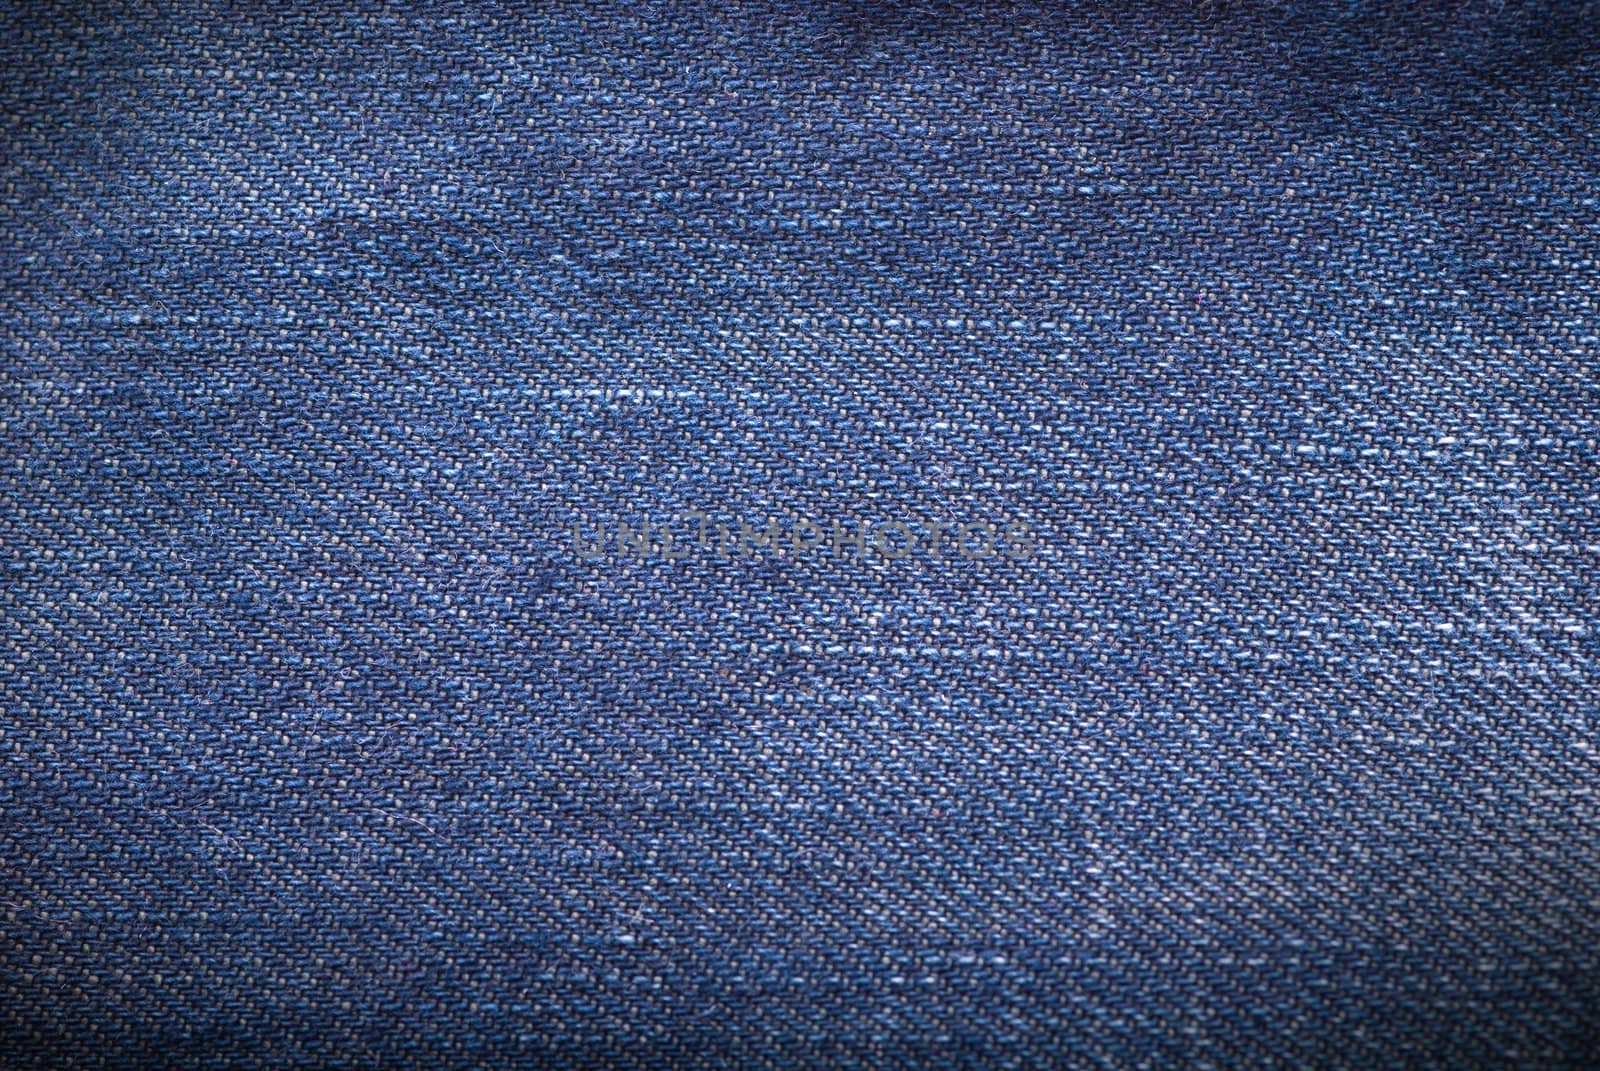 Dark blue denim background or texture